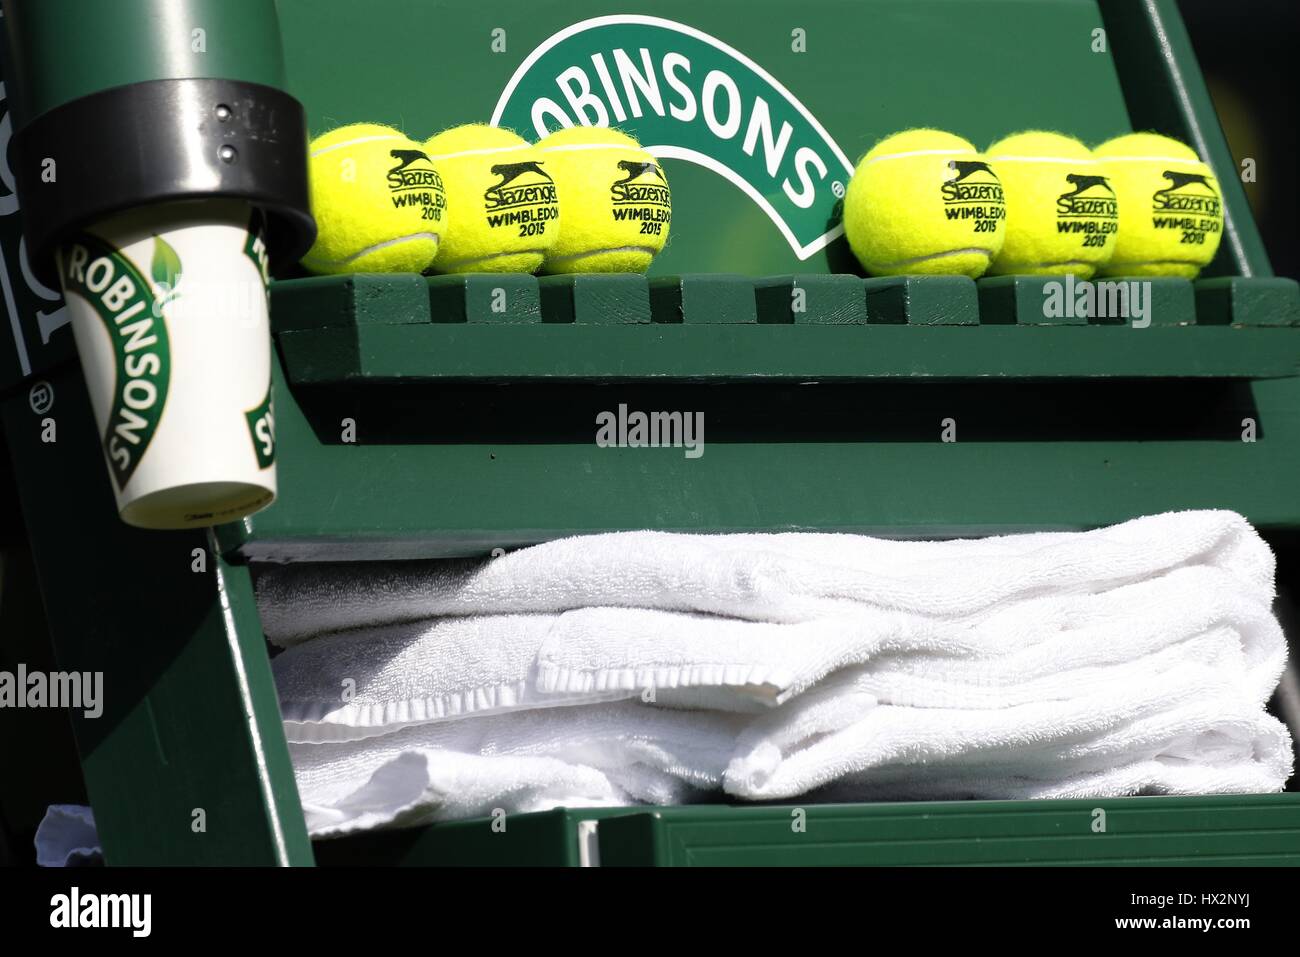 ROBINSONS toallas pelotas de tenis de Wimbledon el Campeonato de Wimbledon 15 del All England Club de Tenis Wimbledon Londres ENGLA Foto de stock